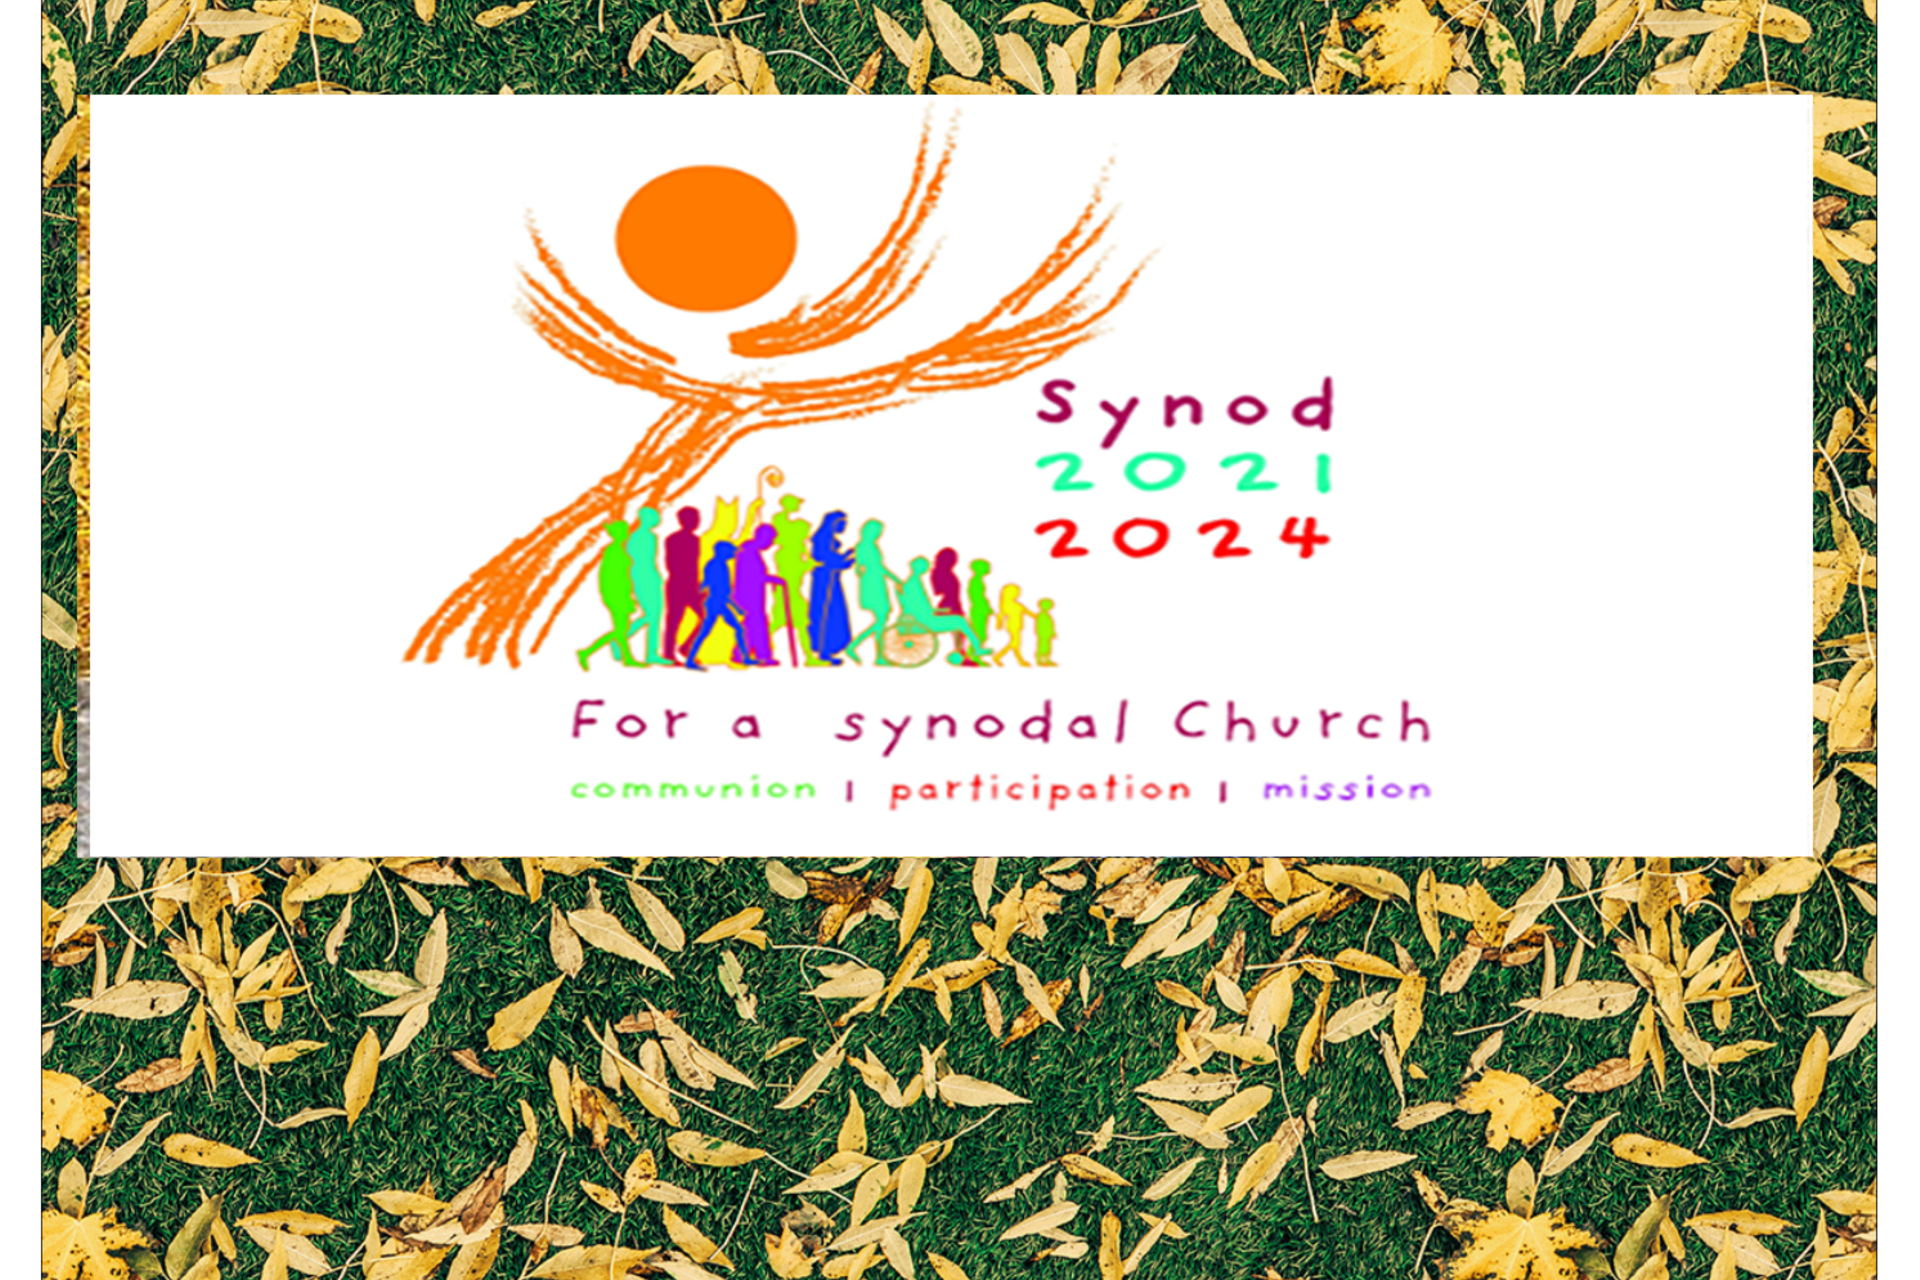 Synod 2021 - 2023